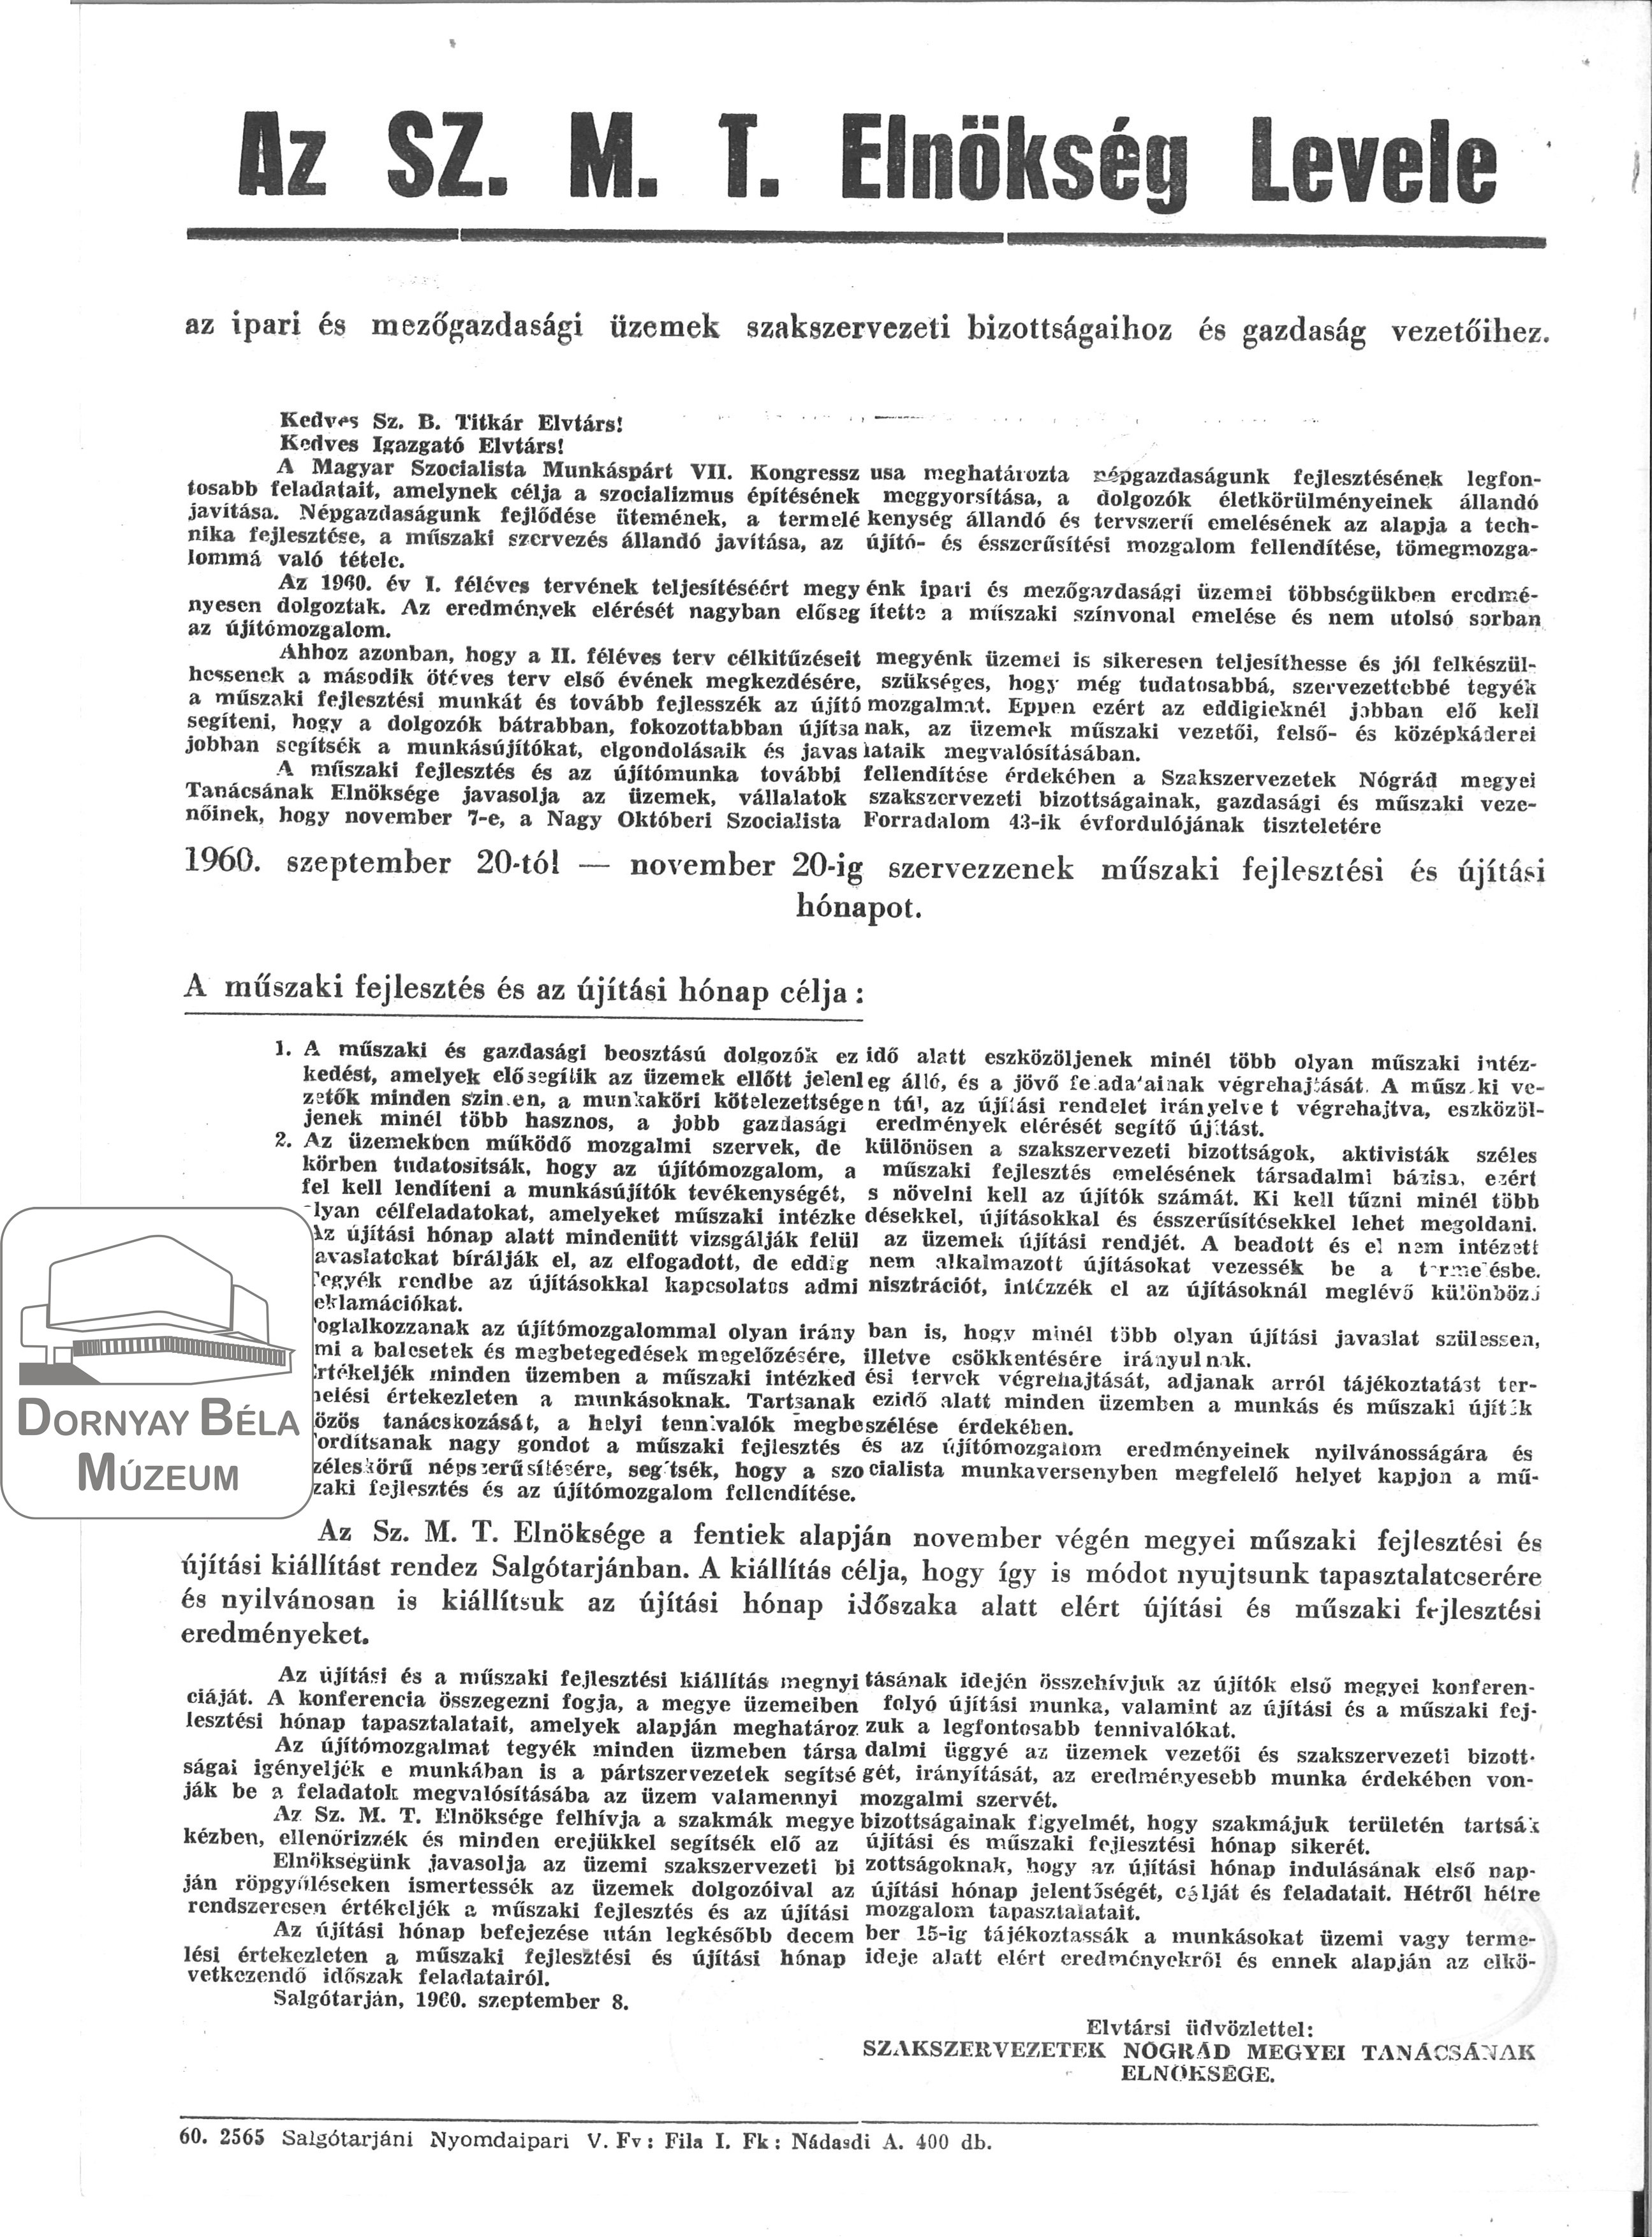 SZMT Elnökségének levele a műszaki fejlesztési és újítási hónapról. (Dornyay Béla Múzeum, Salgótarján CC BY-NC-SA)